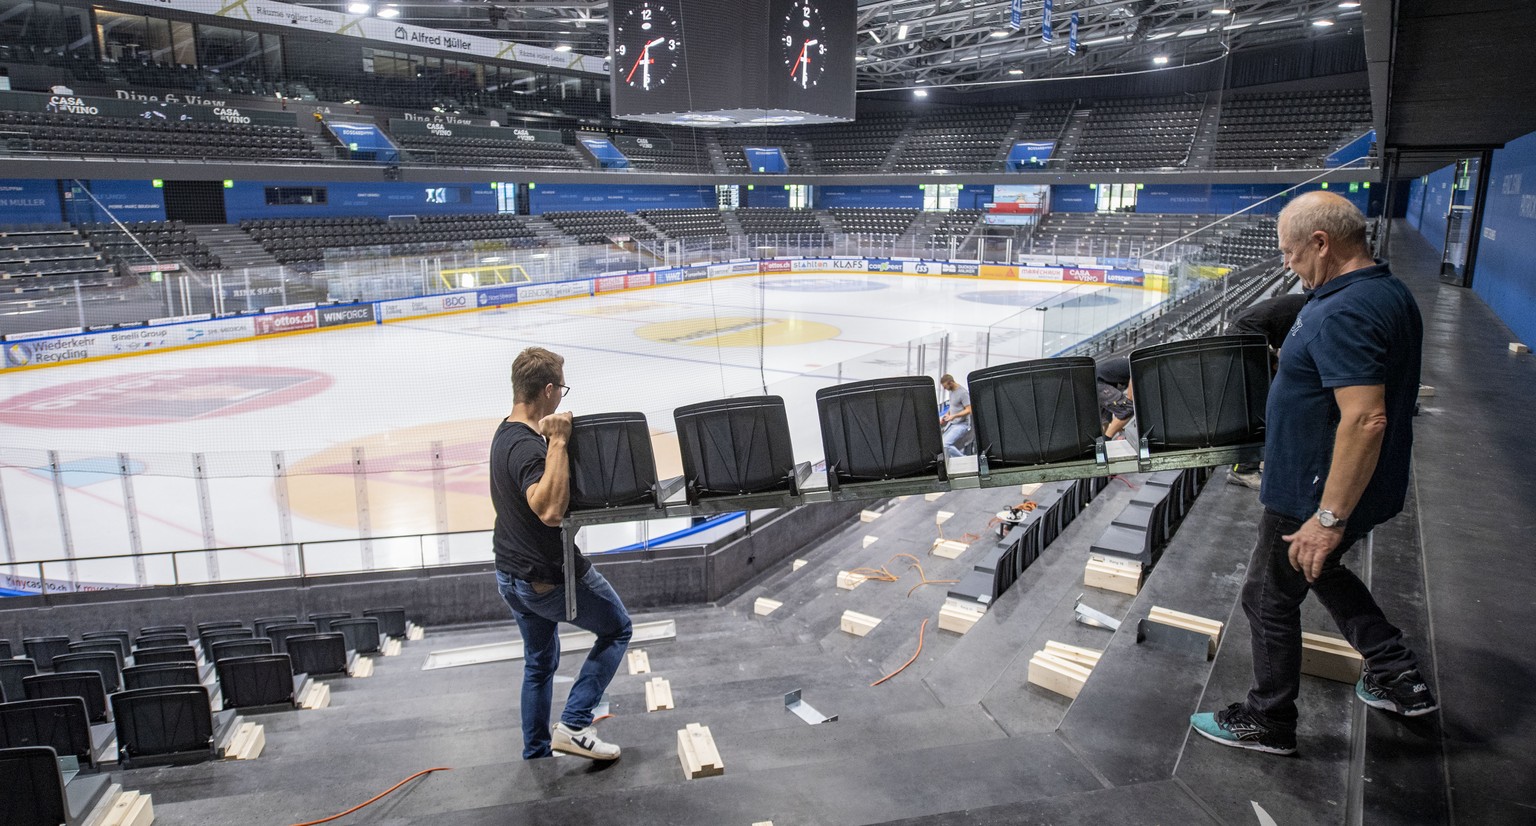 Im Eishockeystadion Bossard Arena des EV Zug werden in den Stehrampen die neuen Sitzplaetze montiert, dies wegen den Vorsichtsmassnamen waehrend der Corona Pandemie am Montag, 14. September 2020 in Zu ...